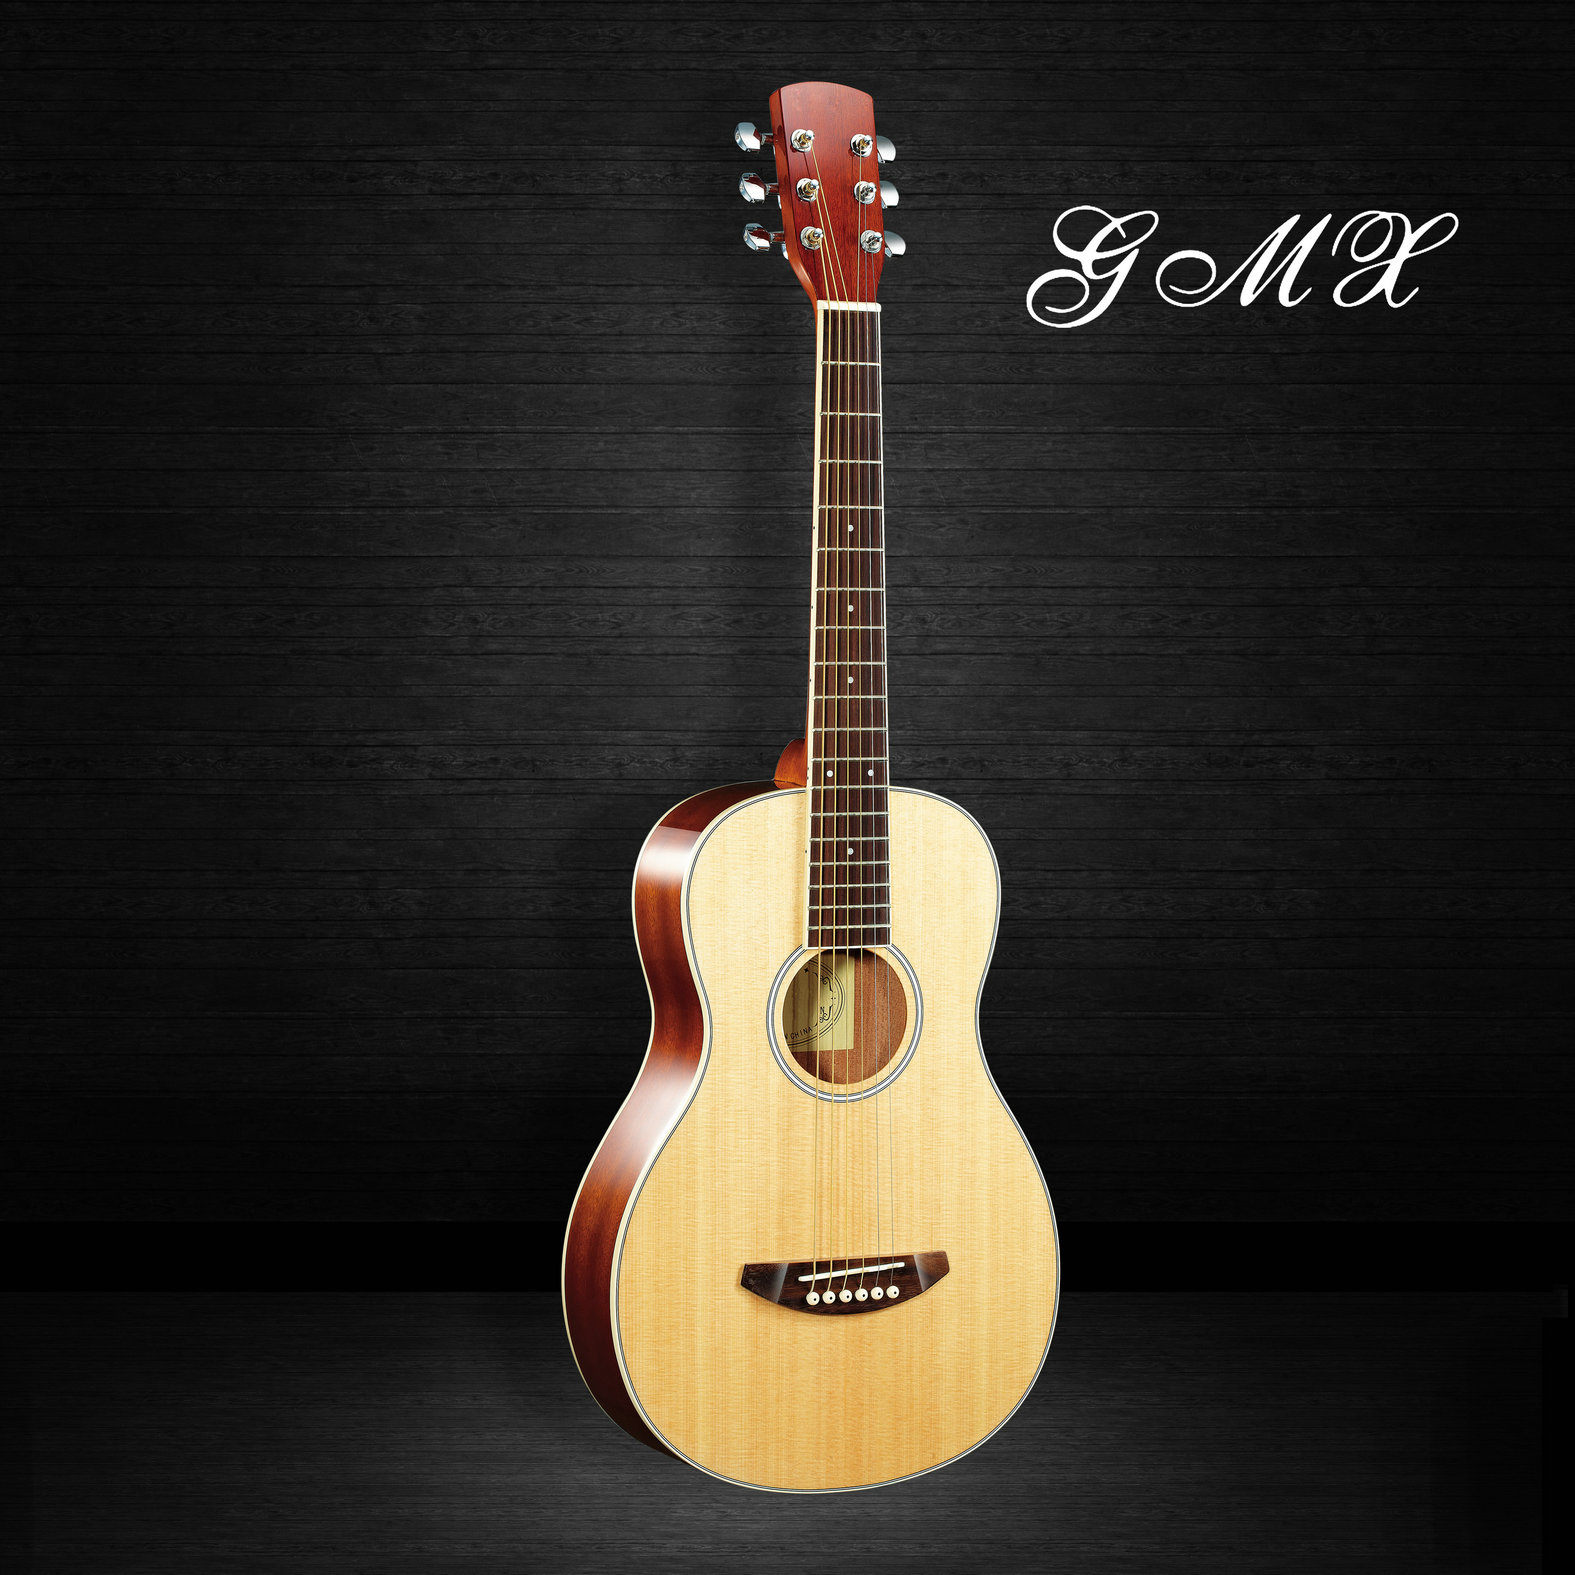 工厂生产桃花心木定制吉他最优惠的价格